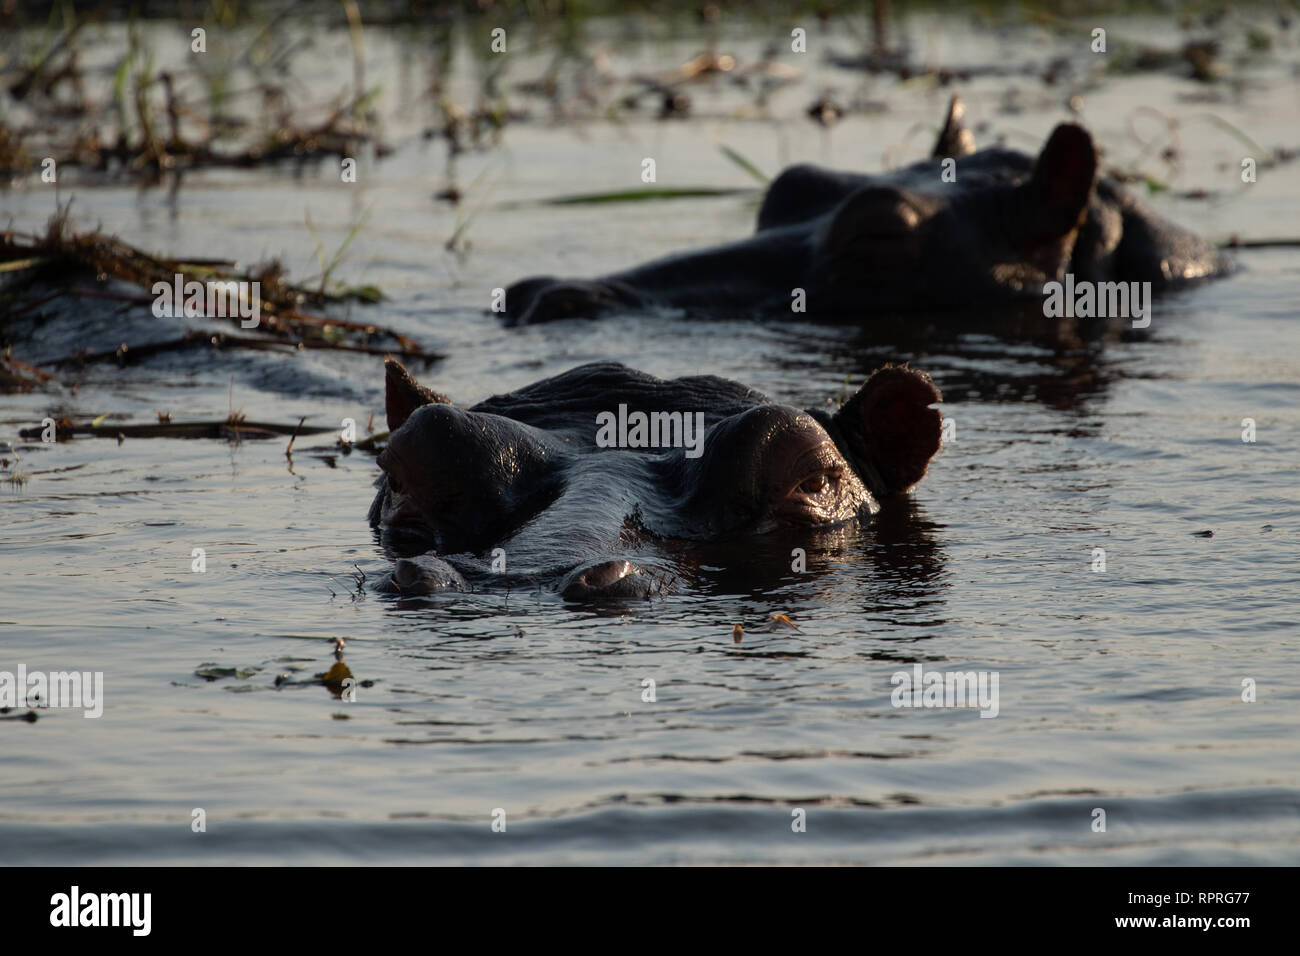 Hipopótamos (Hippopotamus amphibius) reposando en el agua, el Parque Nacional Chobe en Botswana Foto de stock